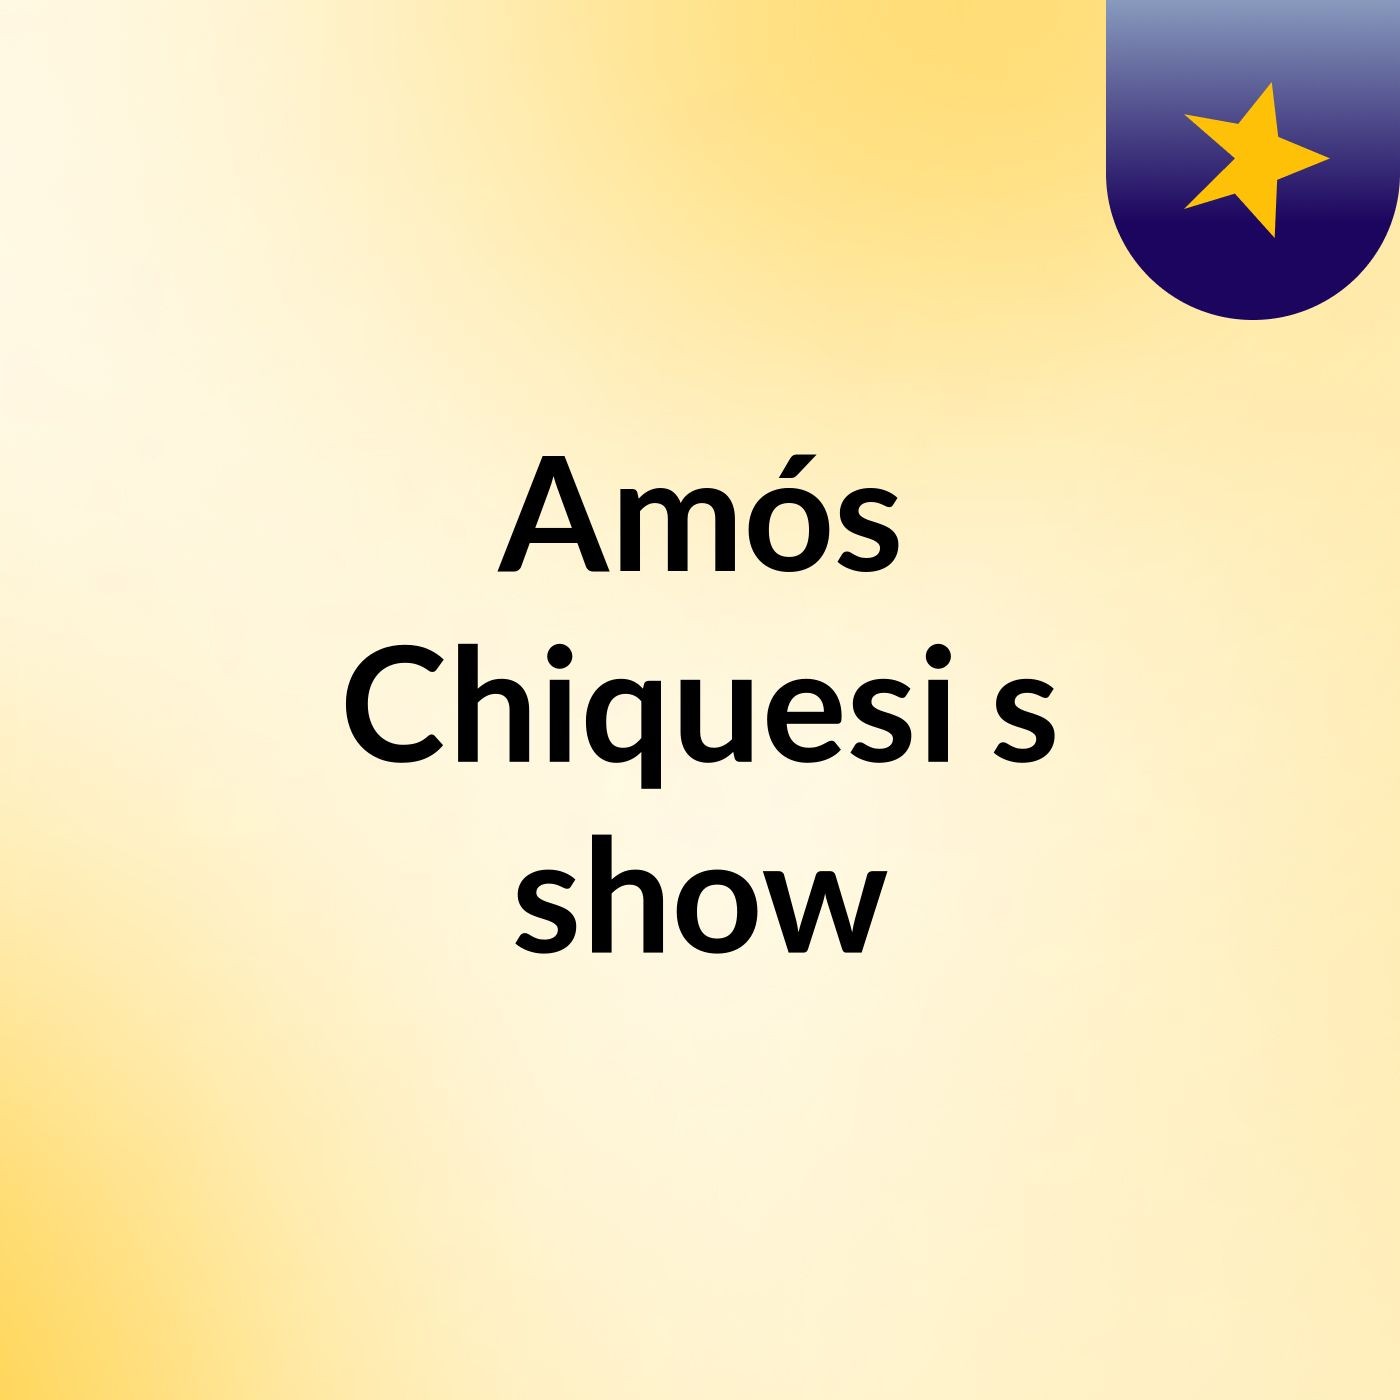 Amós Chiquesi's show